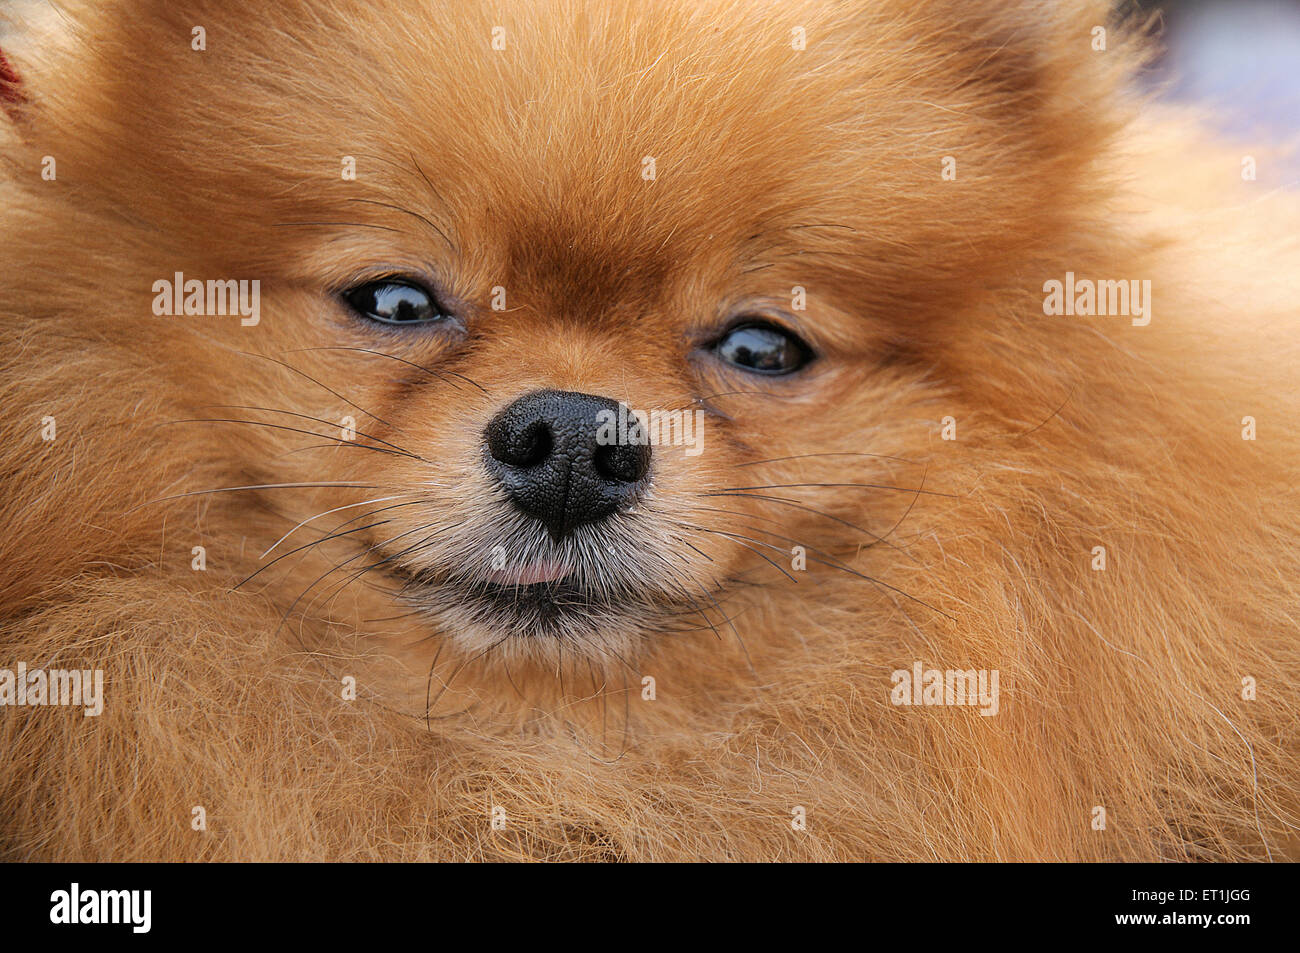 pomeranian dog breed, closeup Stock Photo